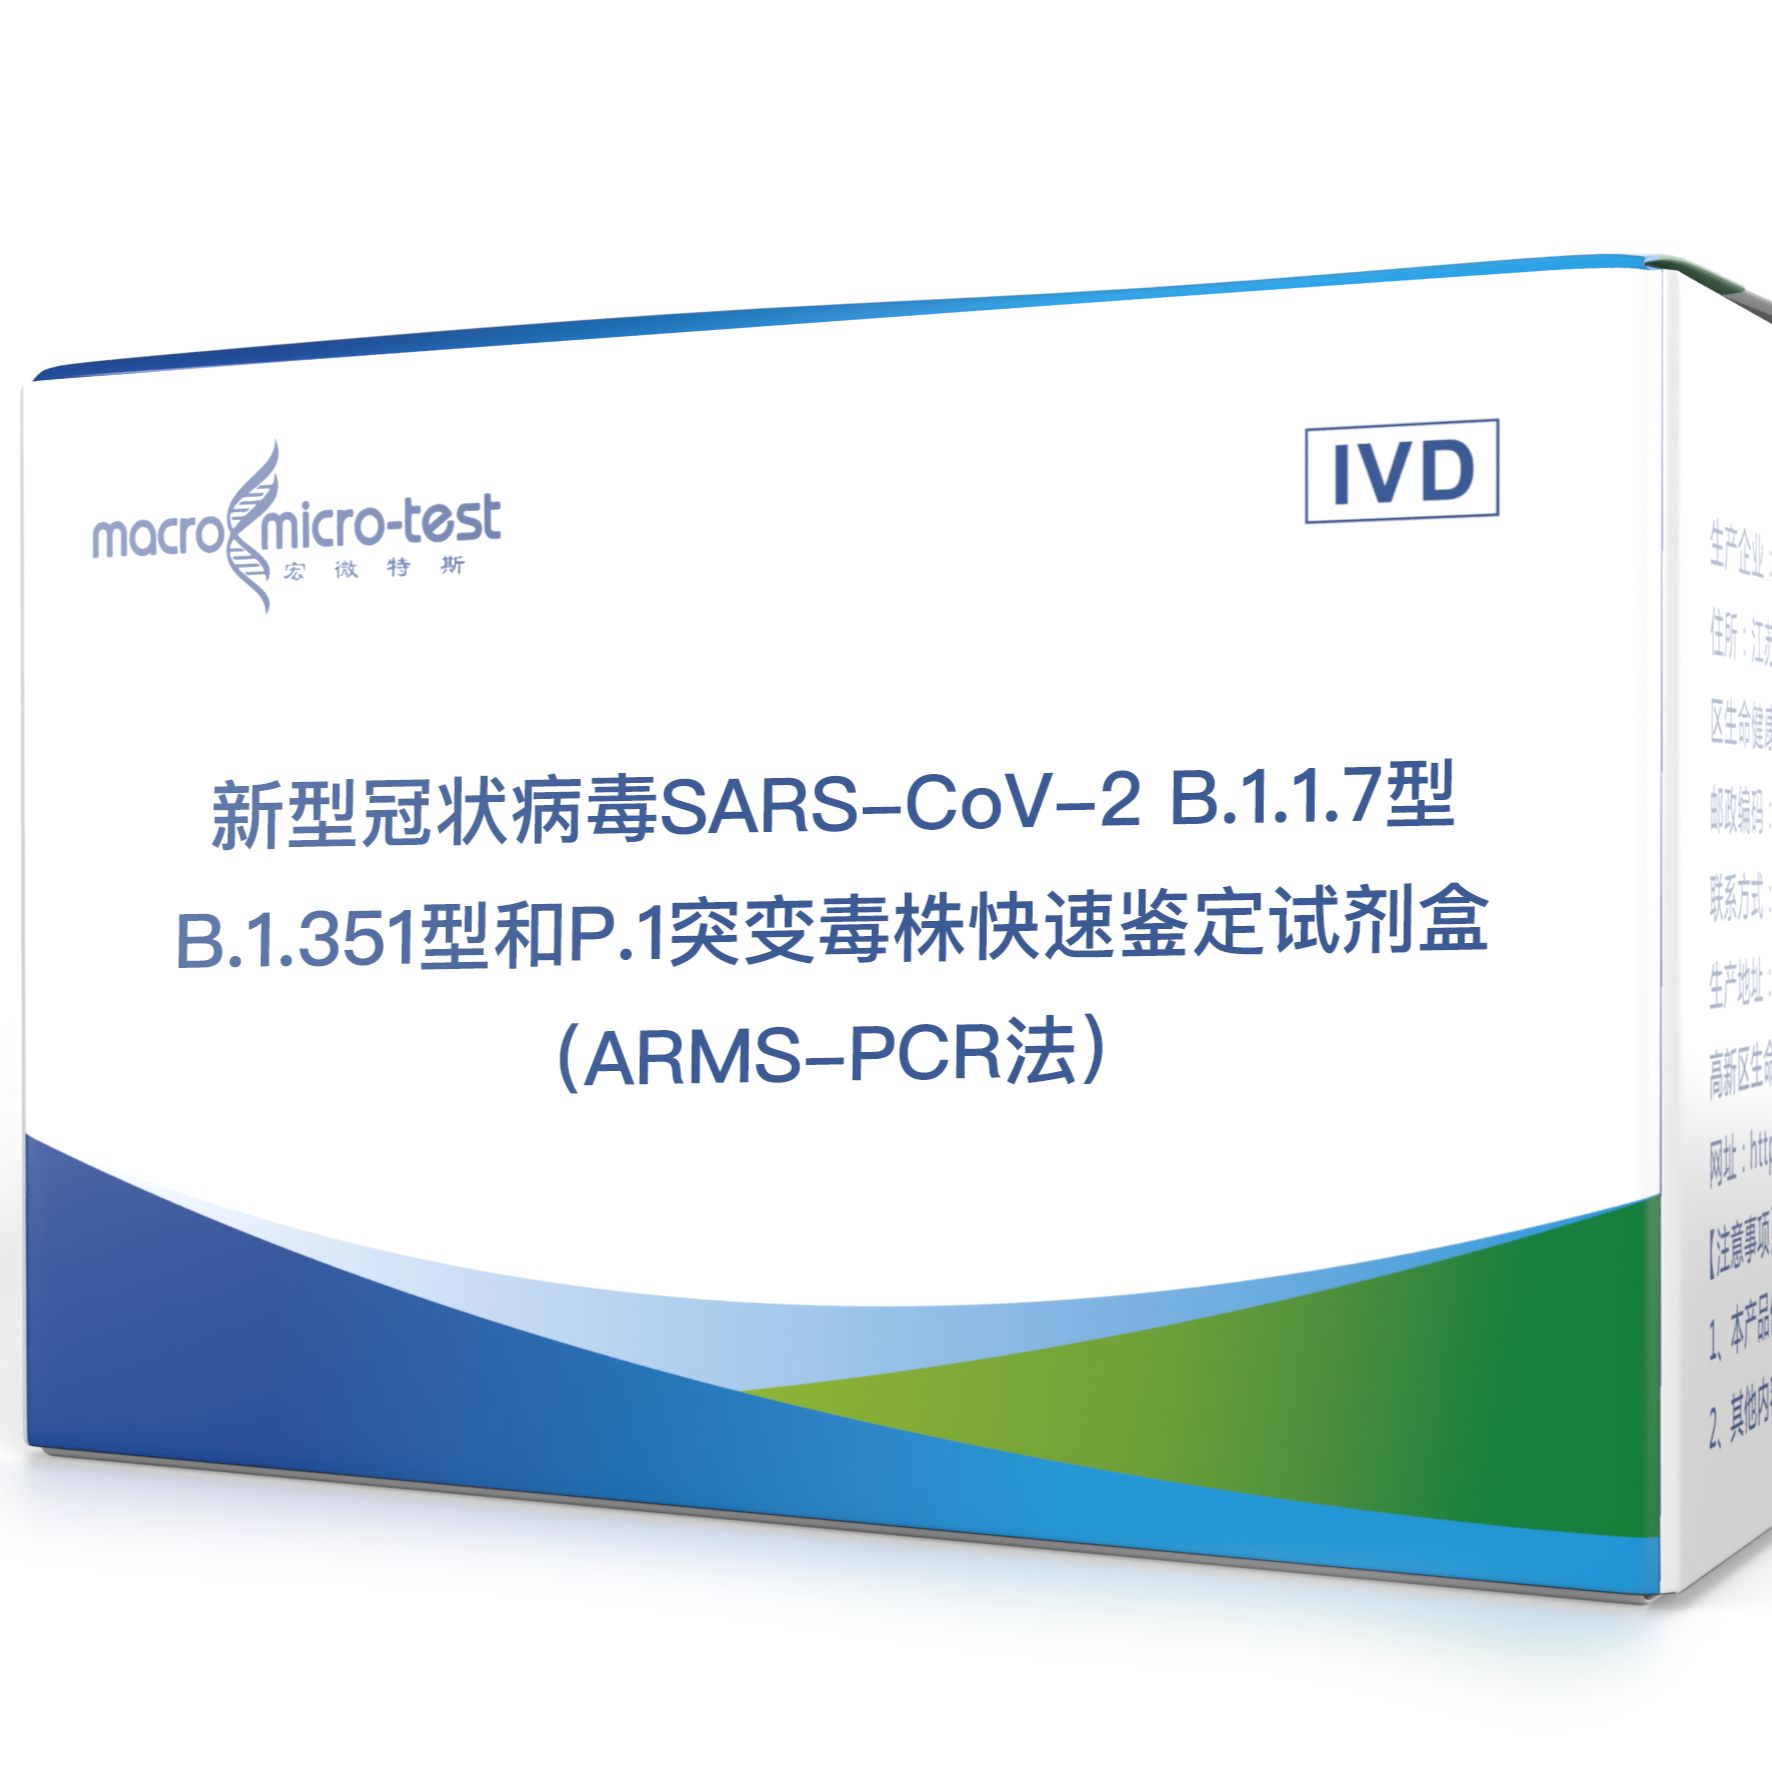 新型冠状病毒SARS-CoV-2 B.1.1.7型、B.1.351型和P.1突变毒株快速鉴定试剂盒（ARMS-PCR法）